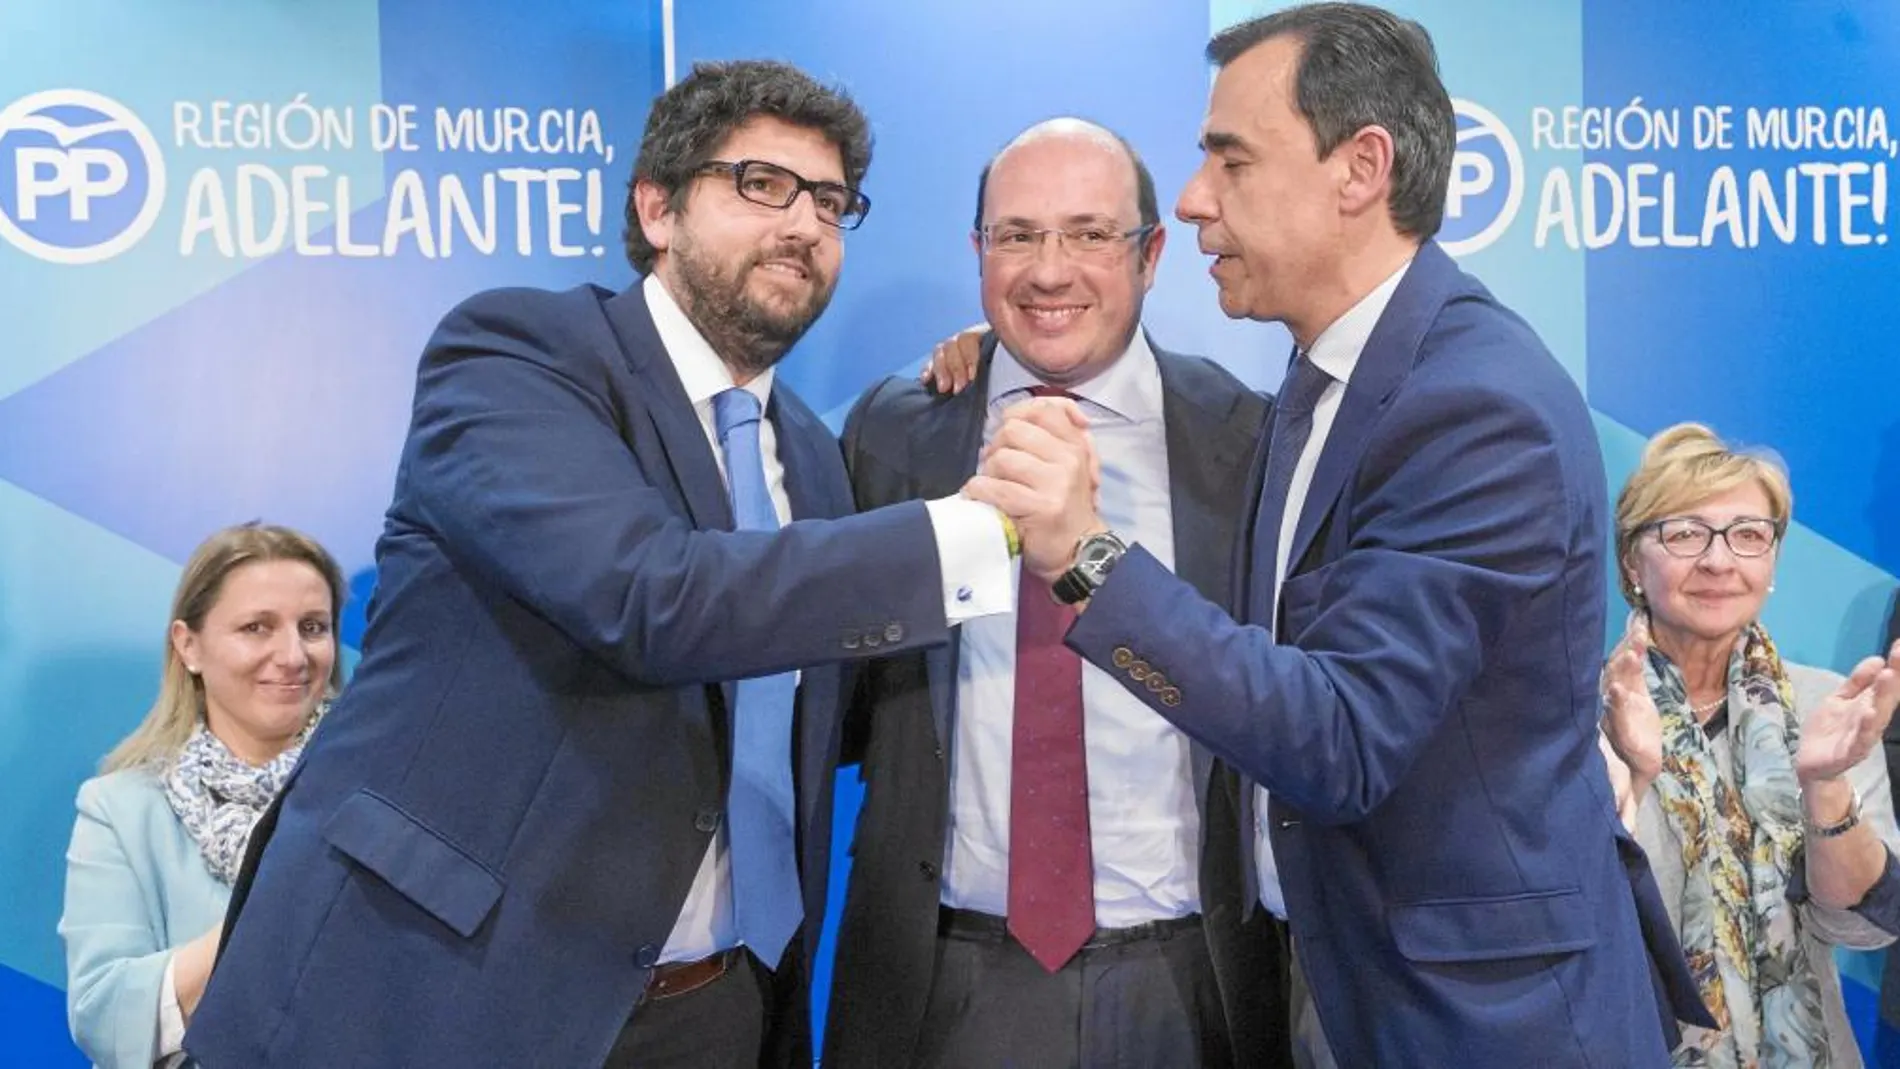 Fernando López Miras abraza a Pedro Antonio Sánchez junto a Maillo, tras dirigirse el presidente a sus compañeros de partido